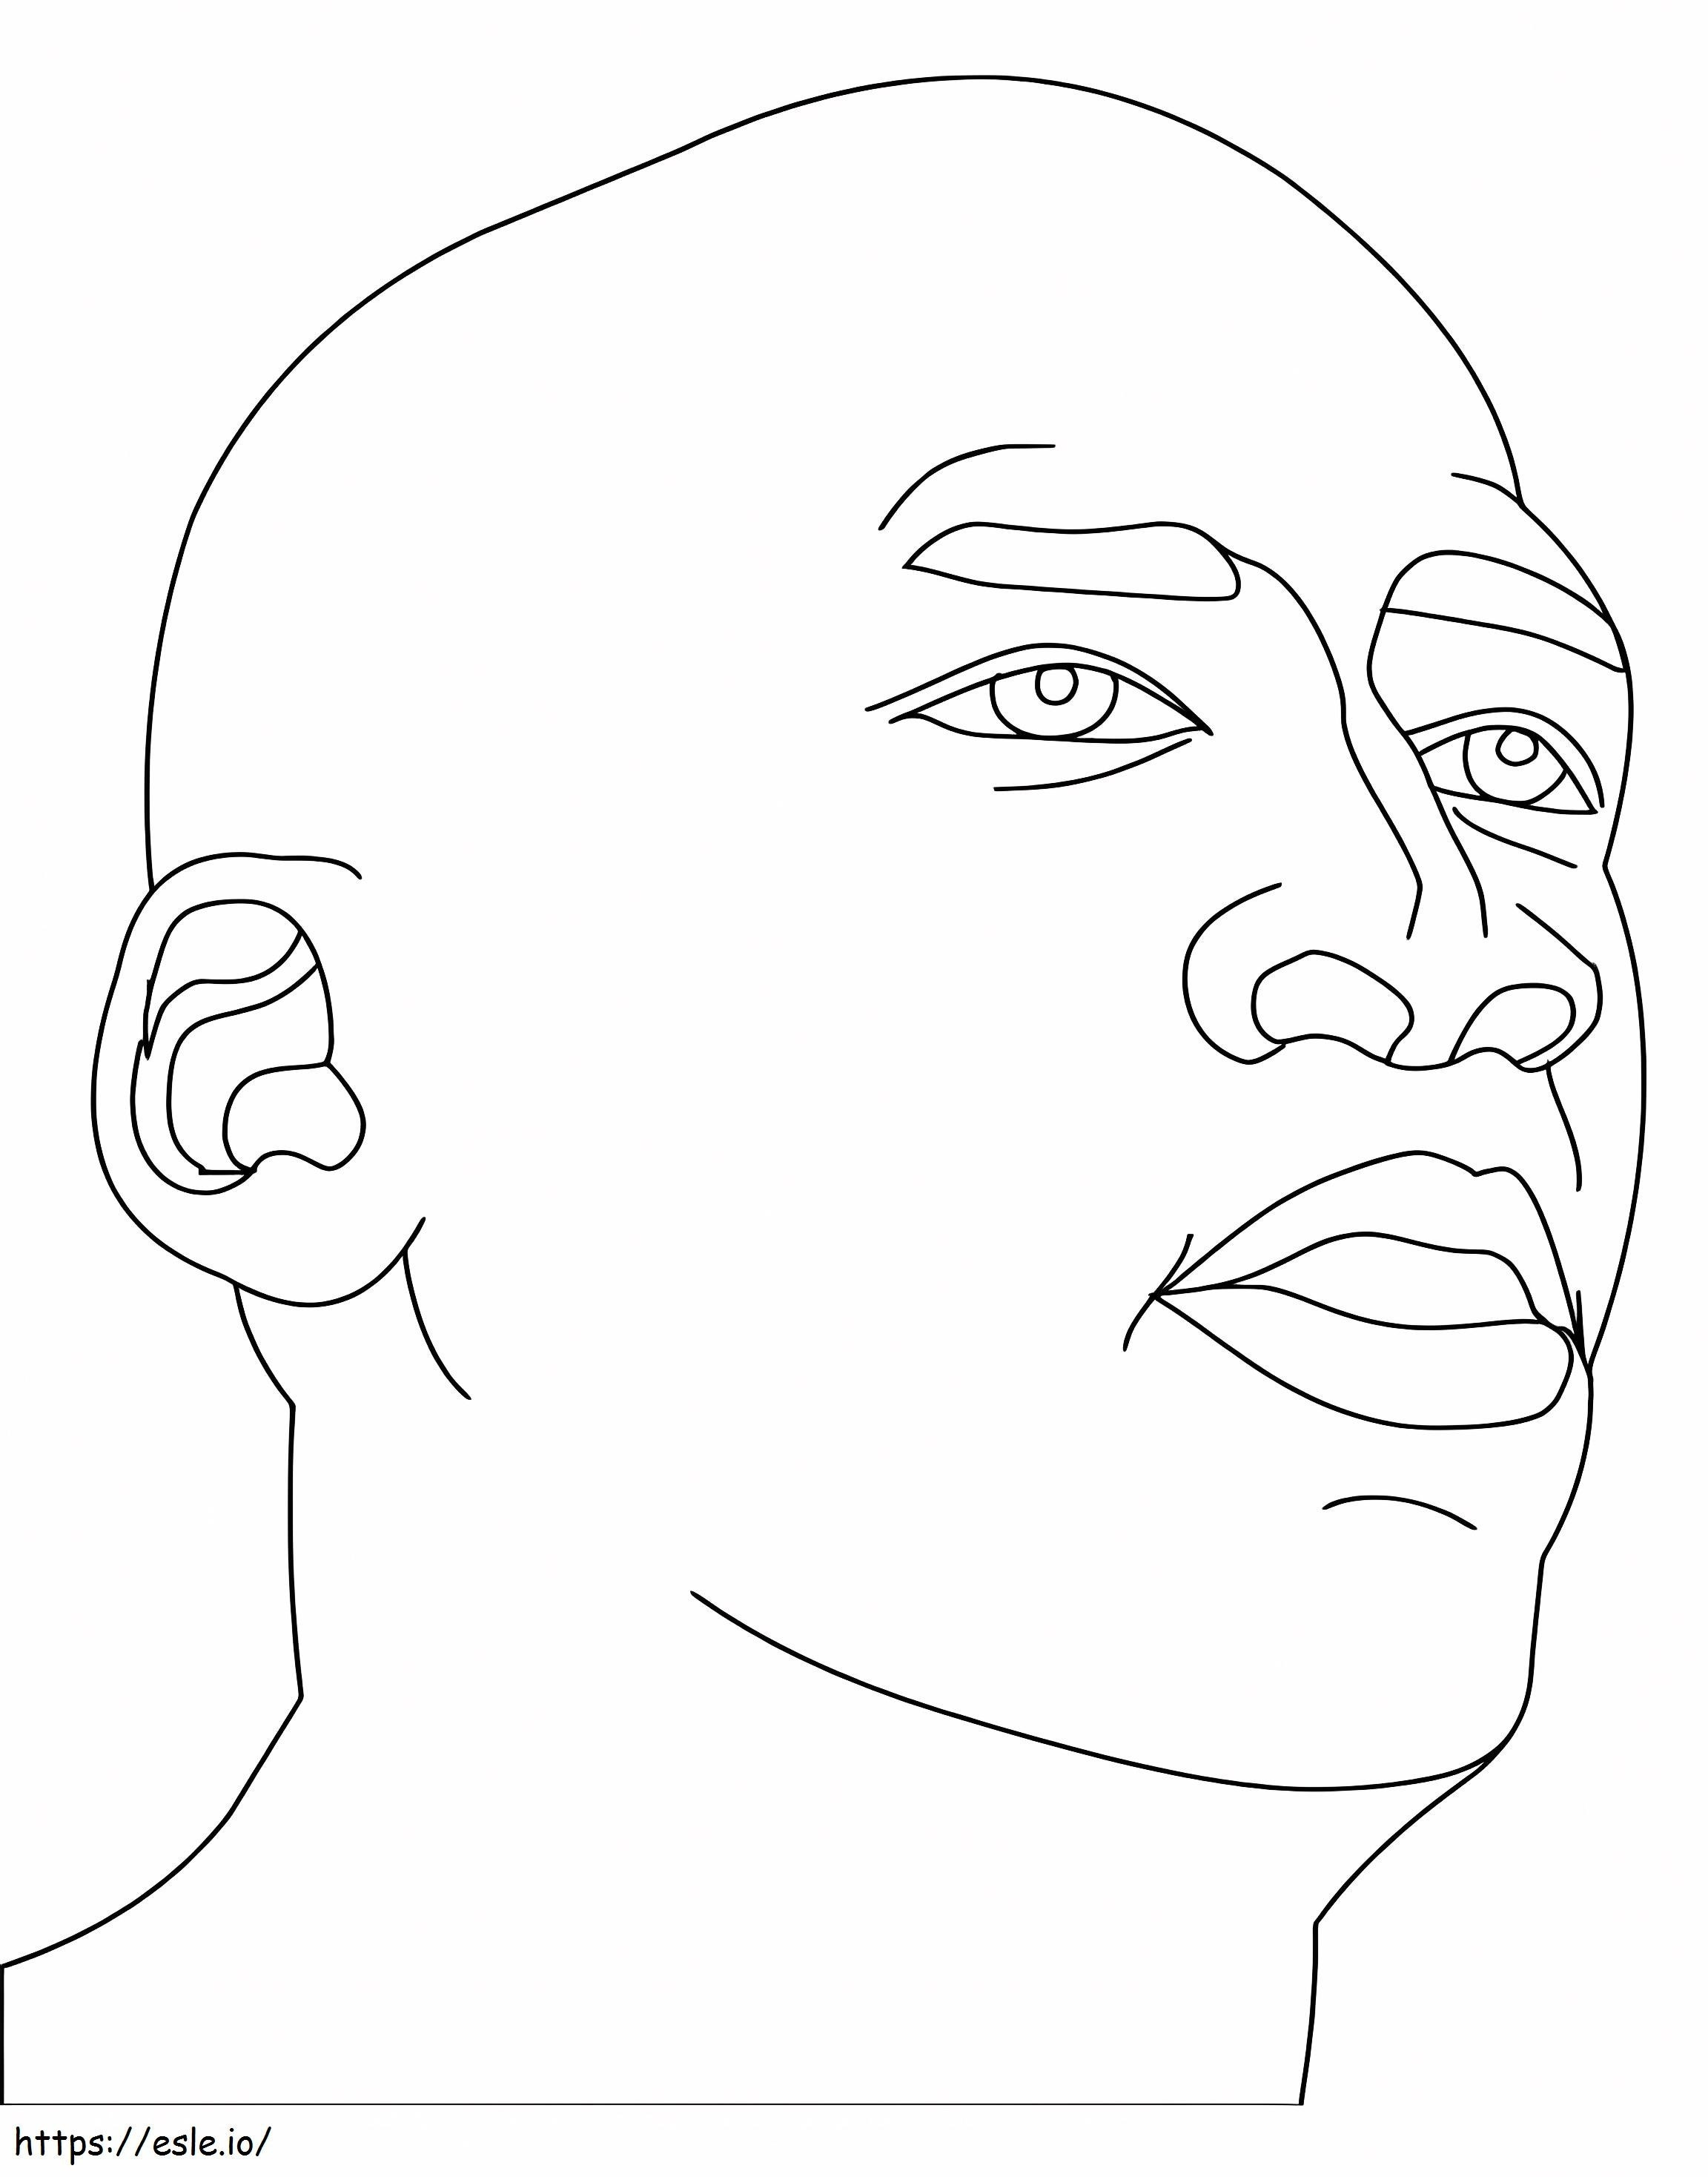 La faccia di Michael Jordan da colorare